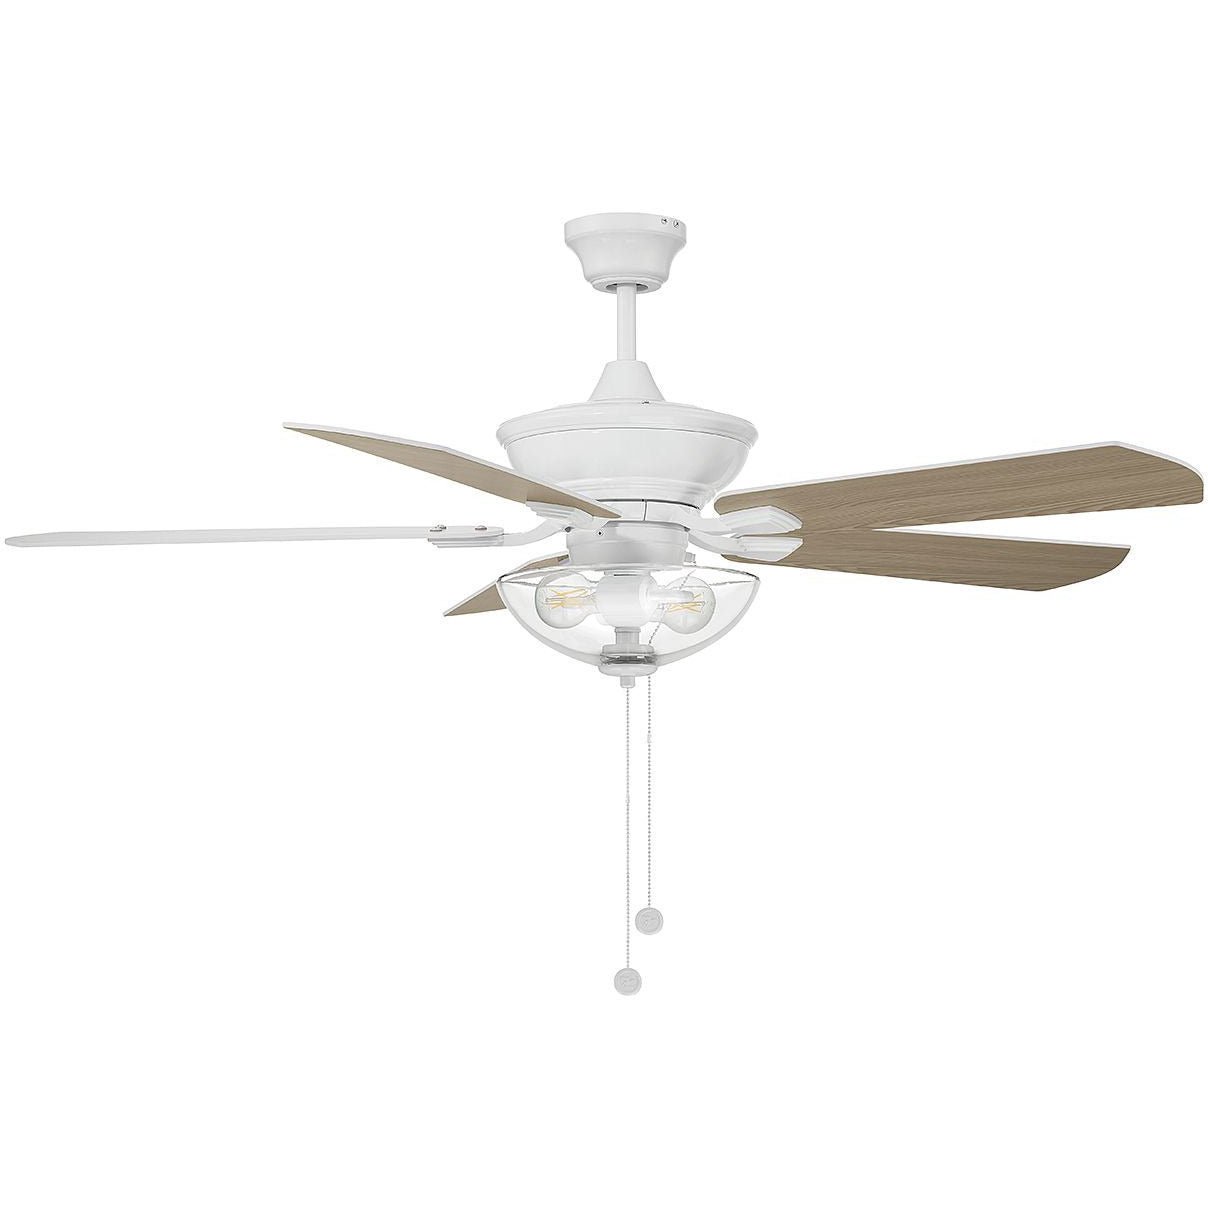 52" 2-Light Outdoor Ceiling Fan